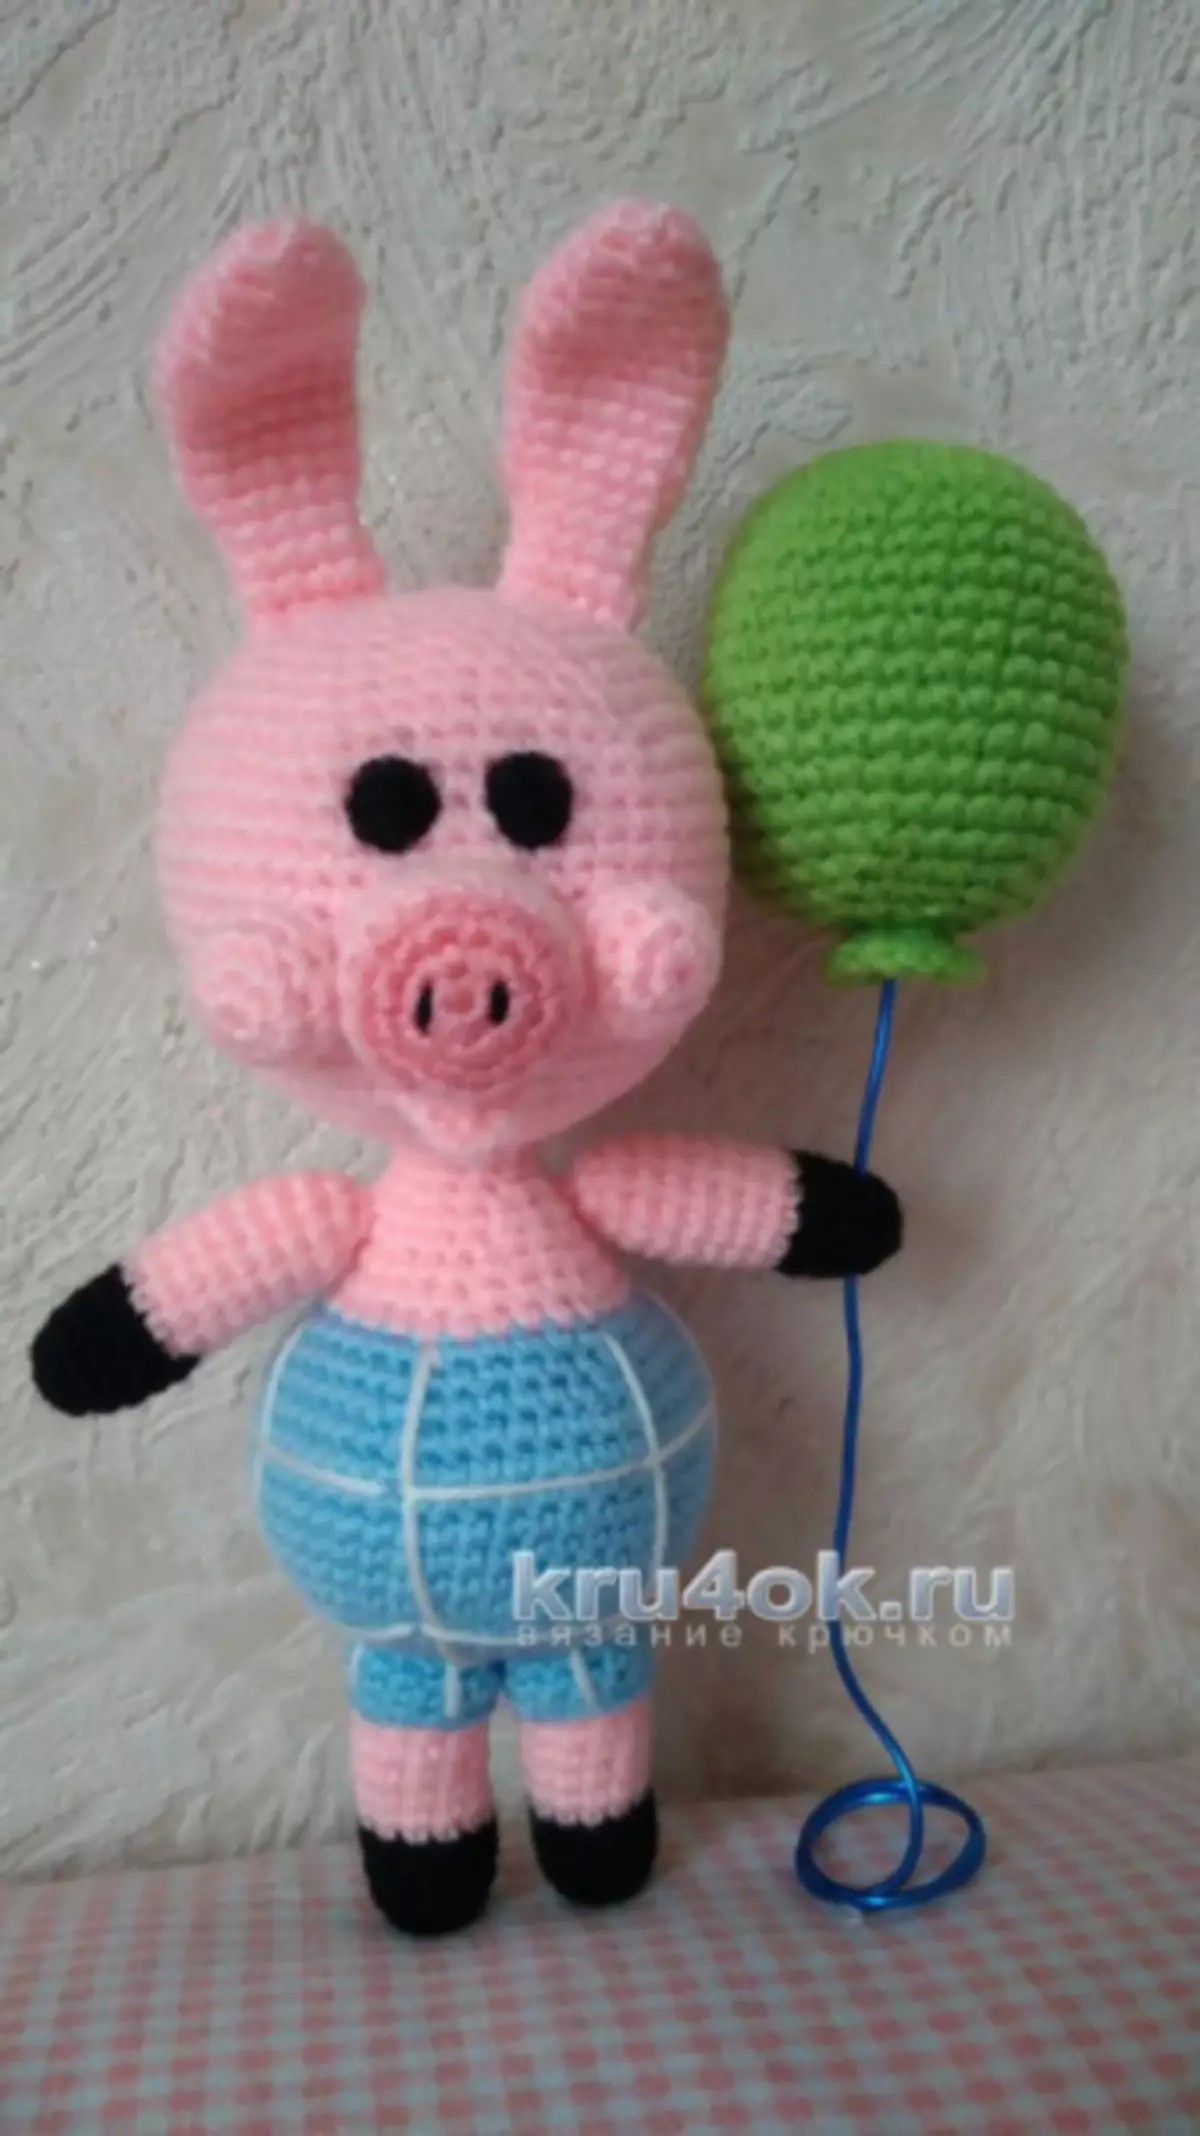 Winnie Pooh Crochet: Master Class com descrição e esquemas